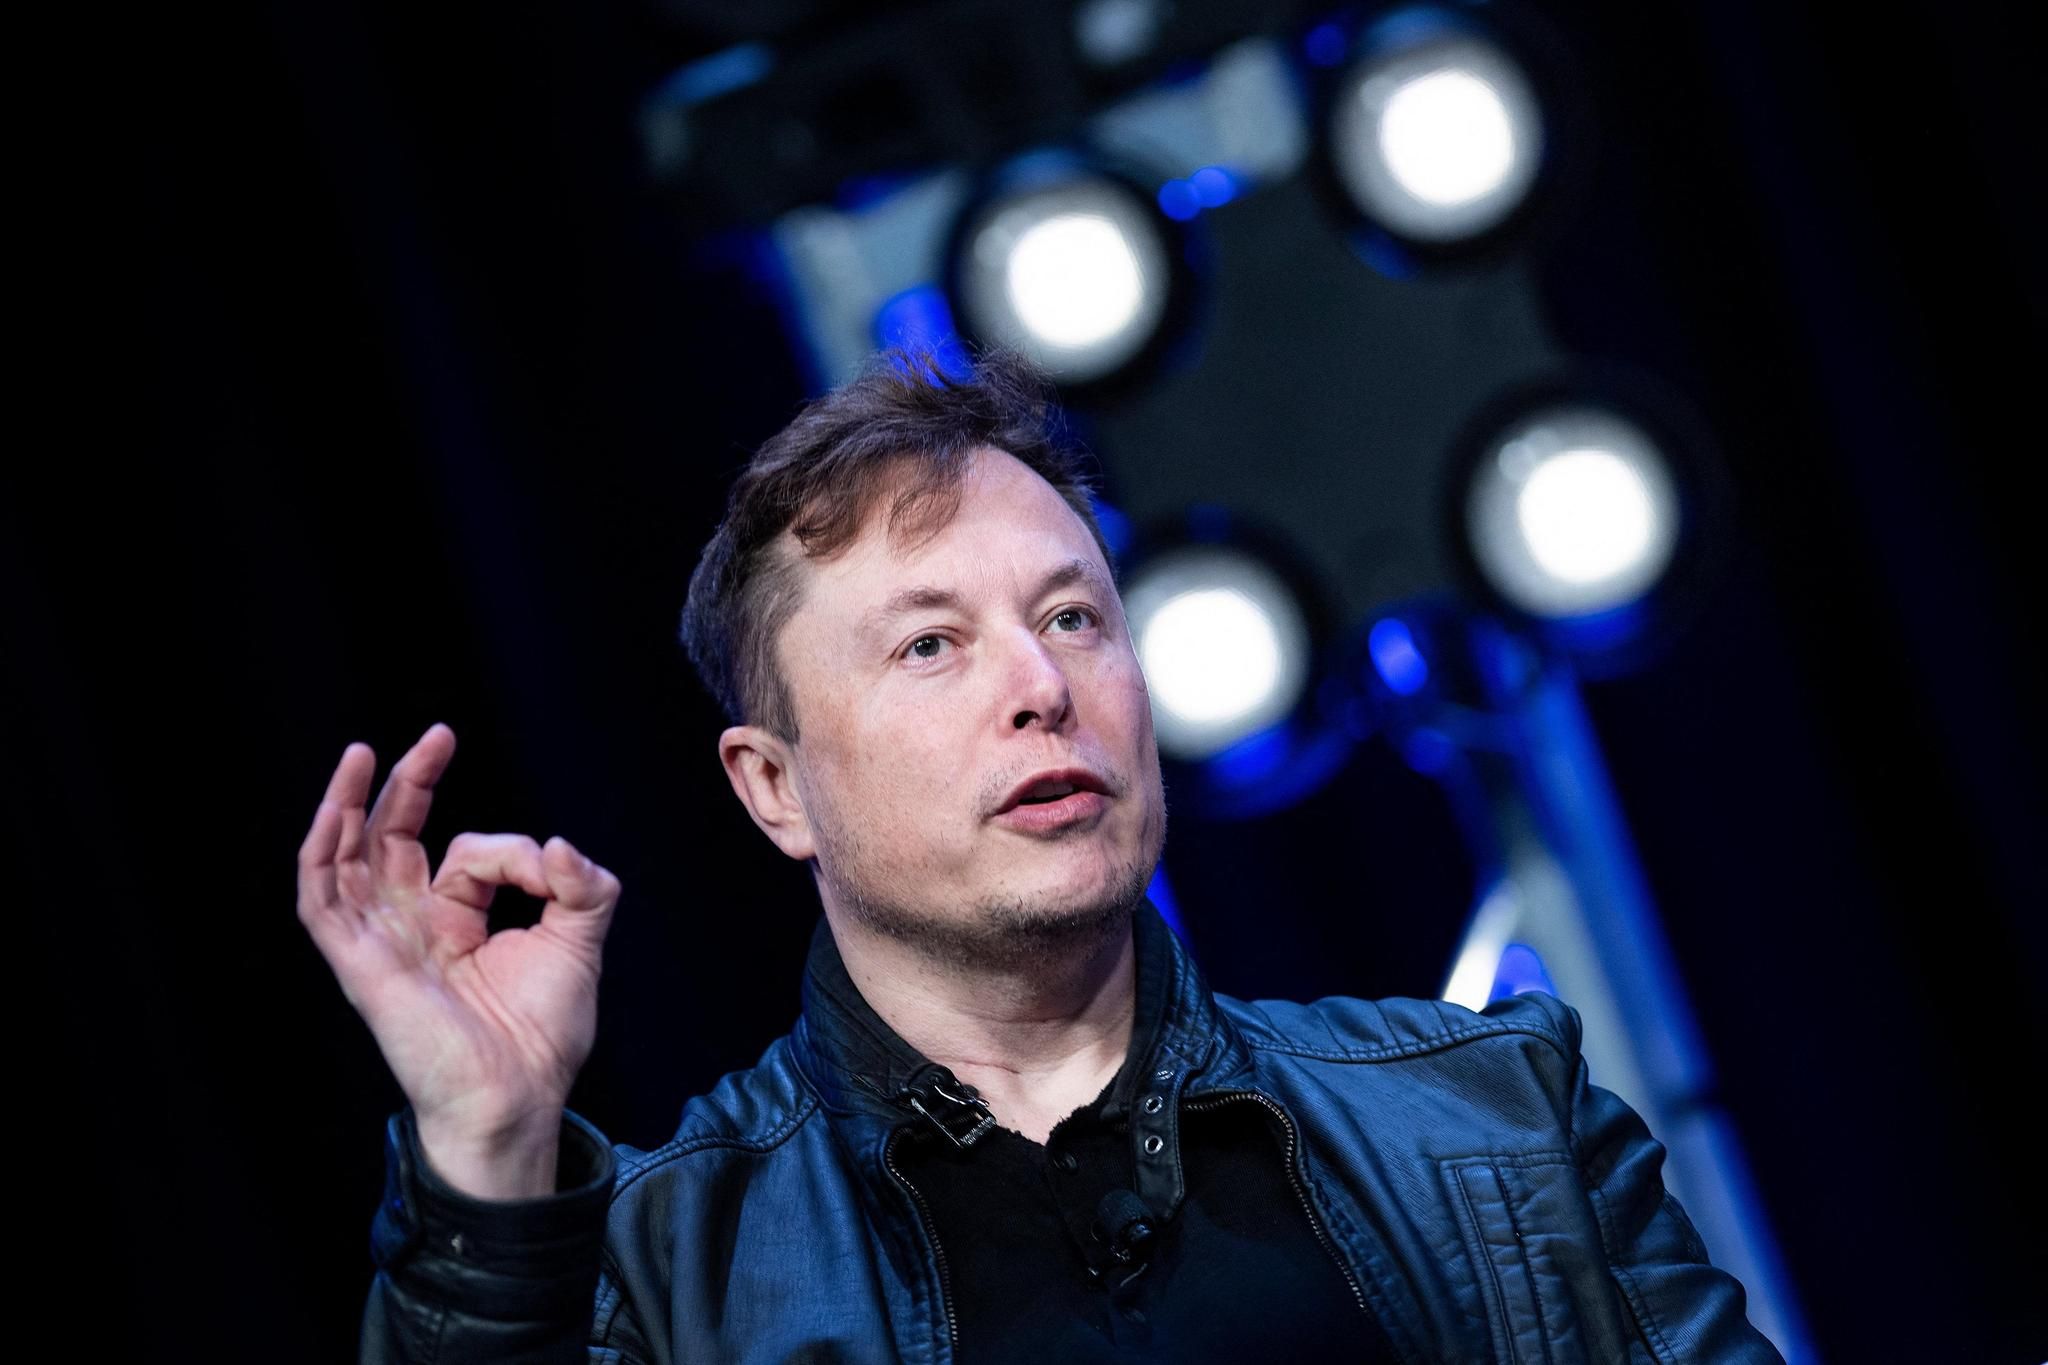 Elon Musk en visite à l'usine Tesla de Berlin après son sabotage